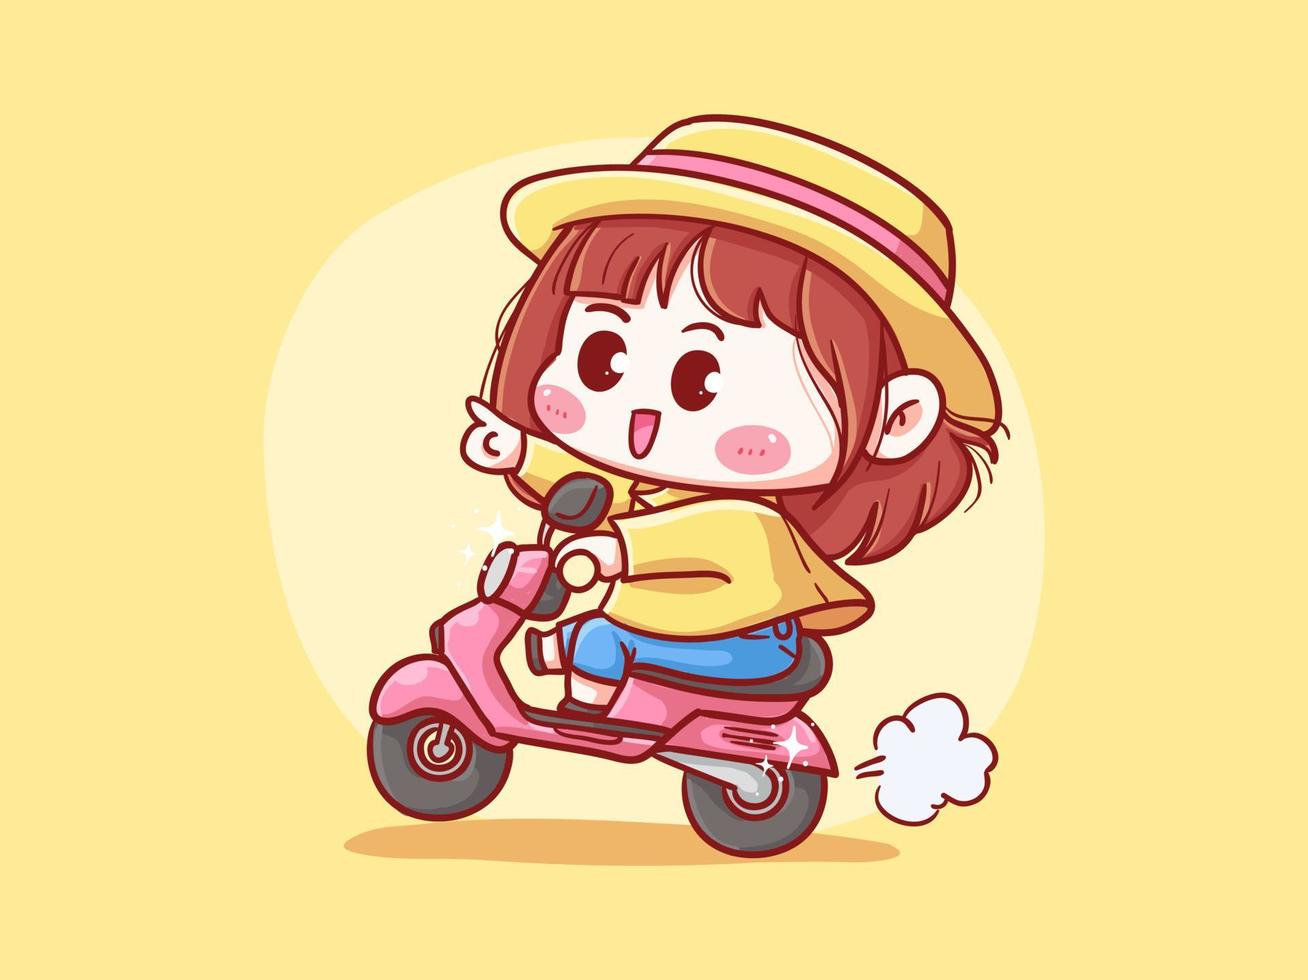 fille mignonne et kawaii avec un chapeau de paille équitation scooter pour livraison manga chibi illustration vecteur